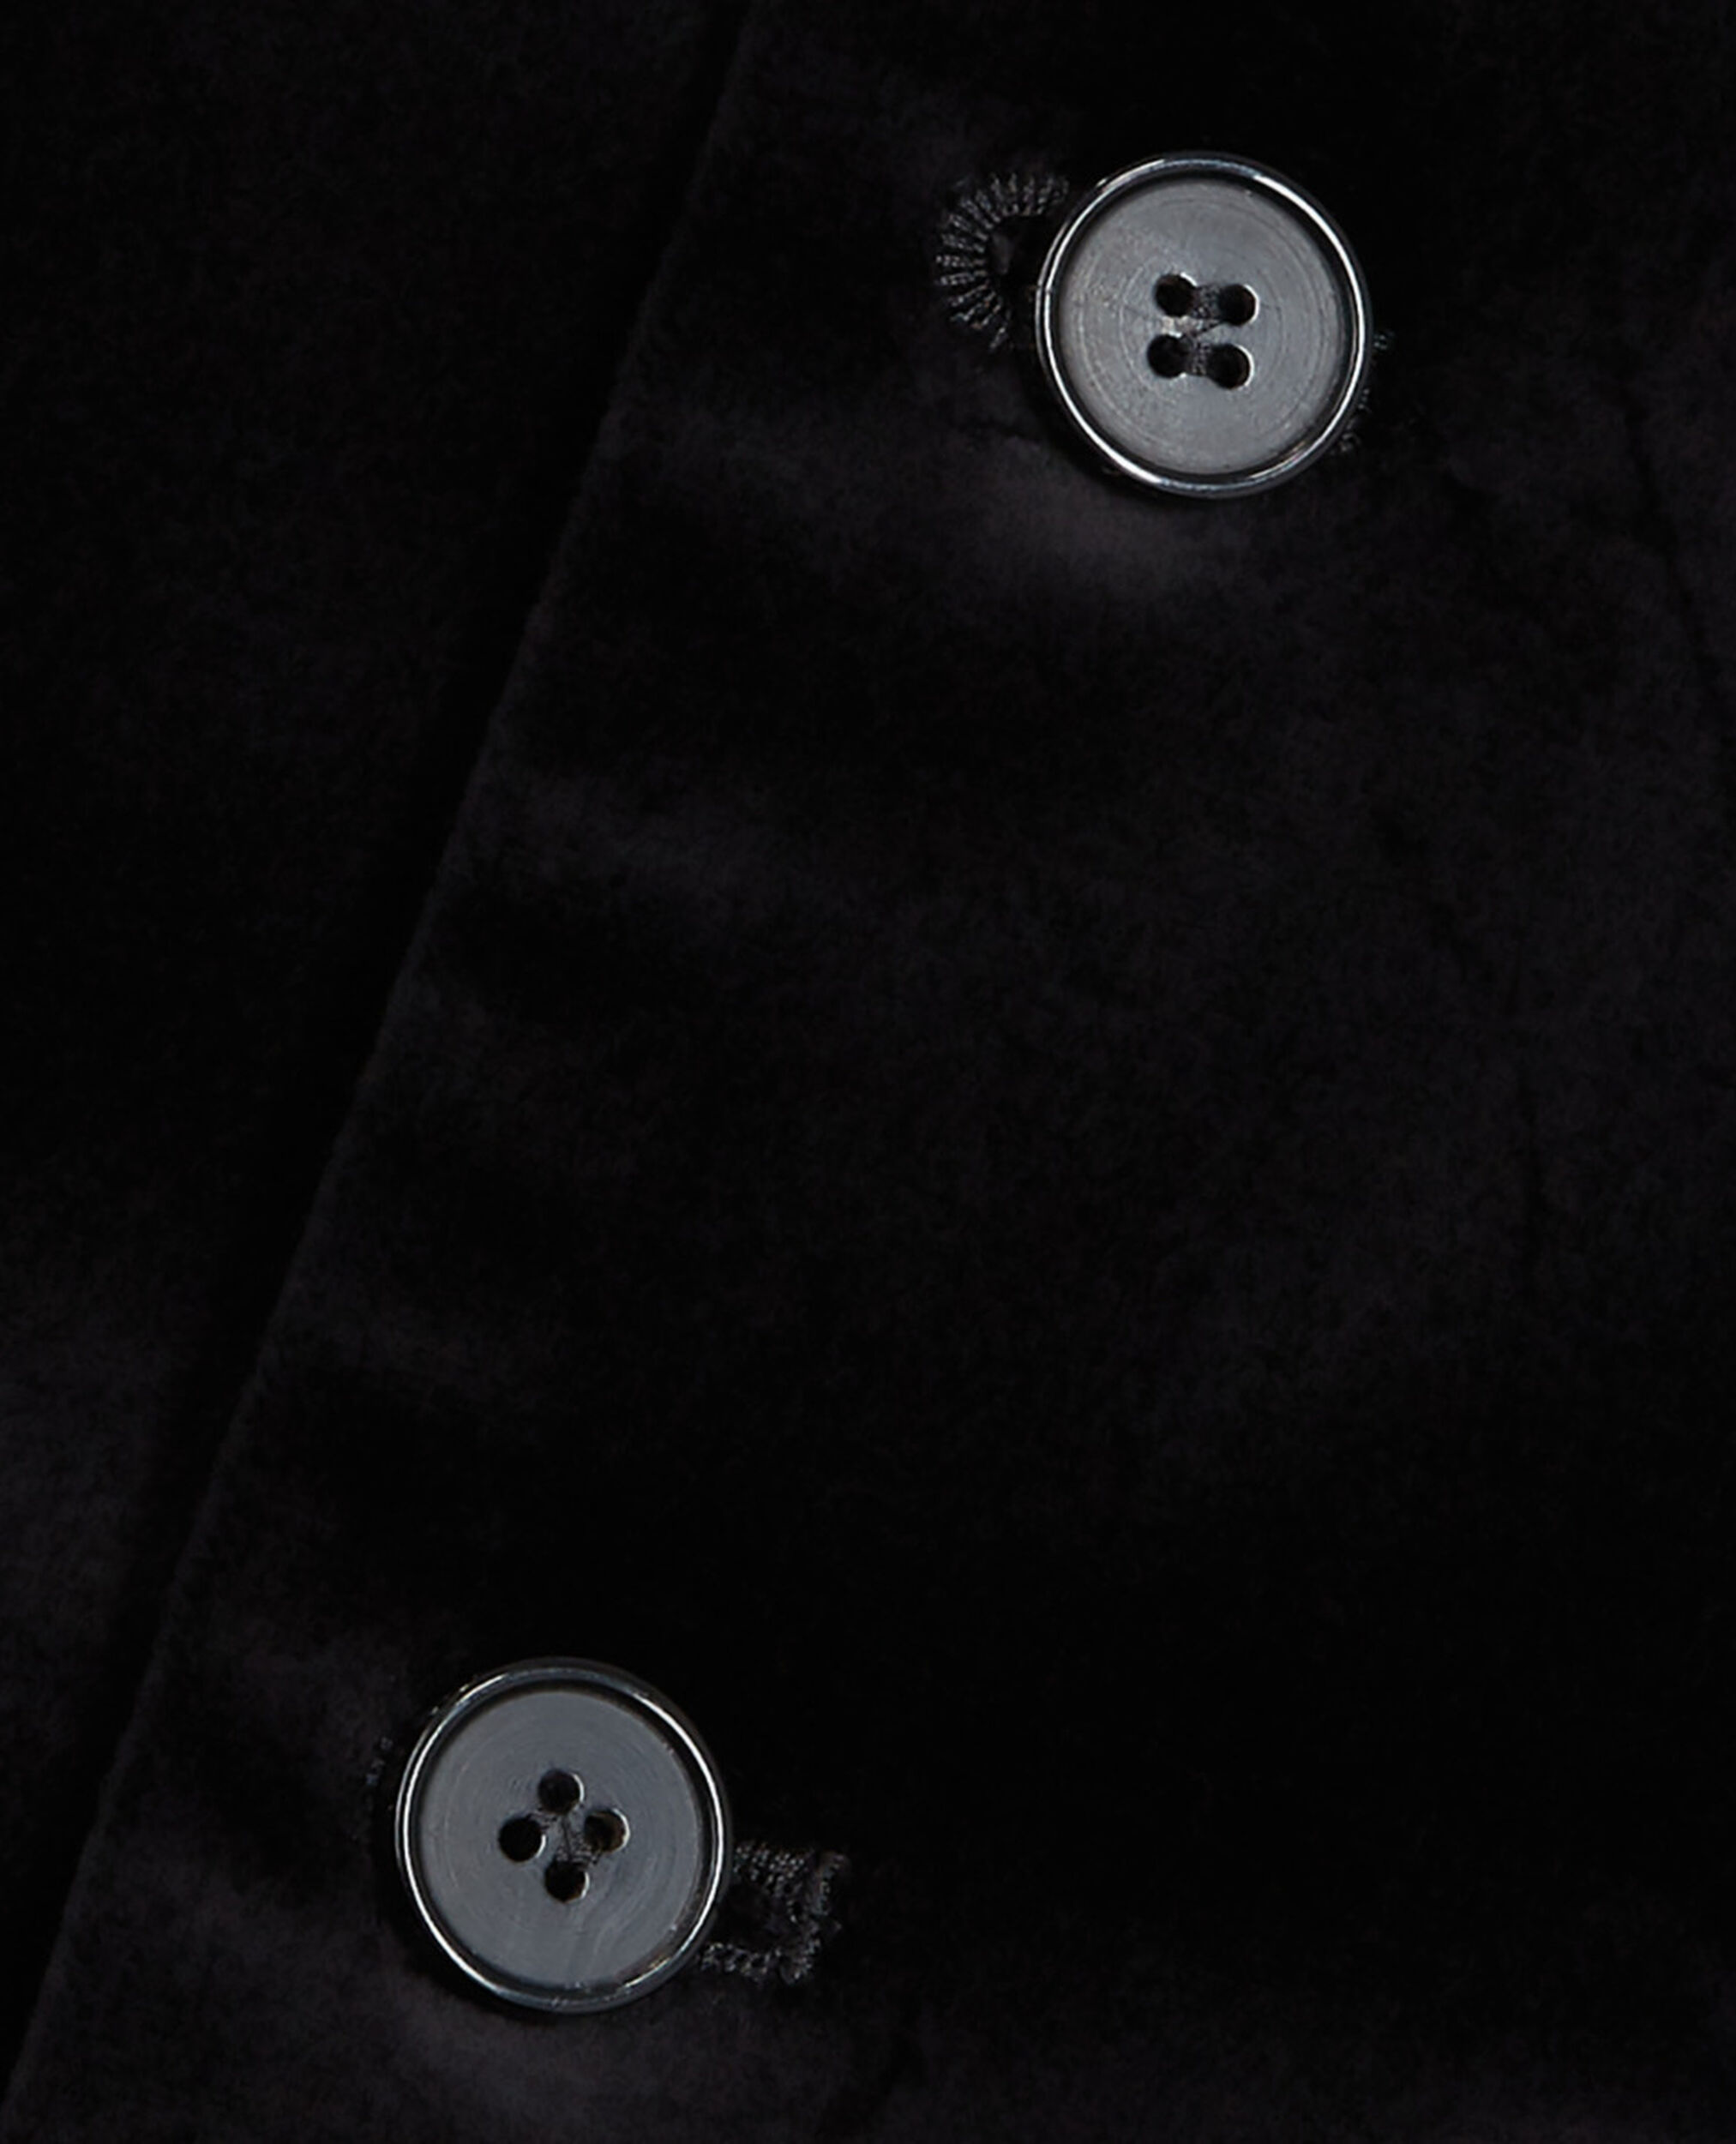 Black velvet suit vest, BLACK, hi-res image number null